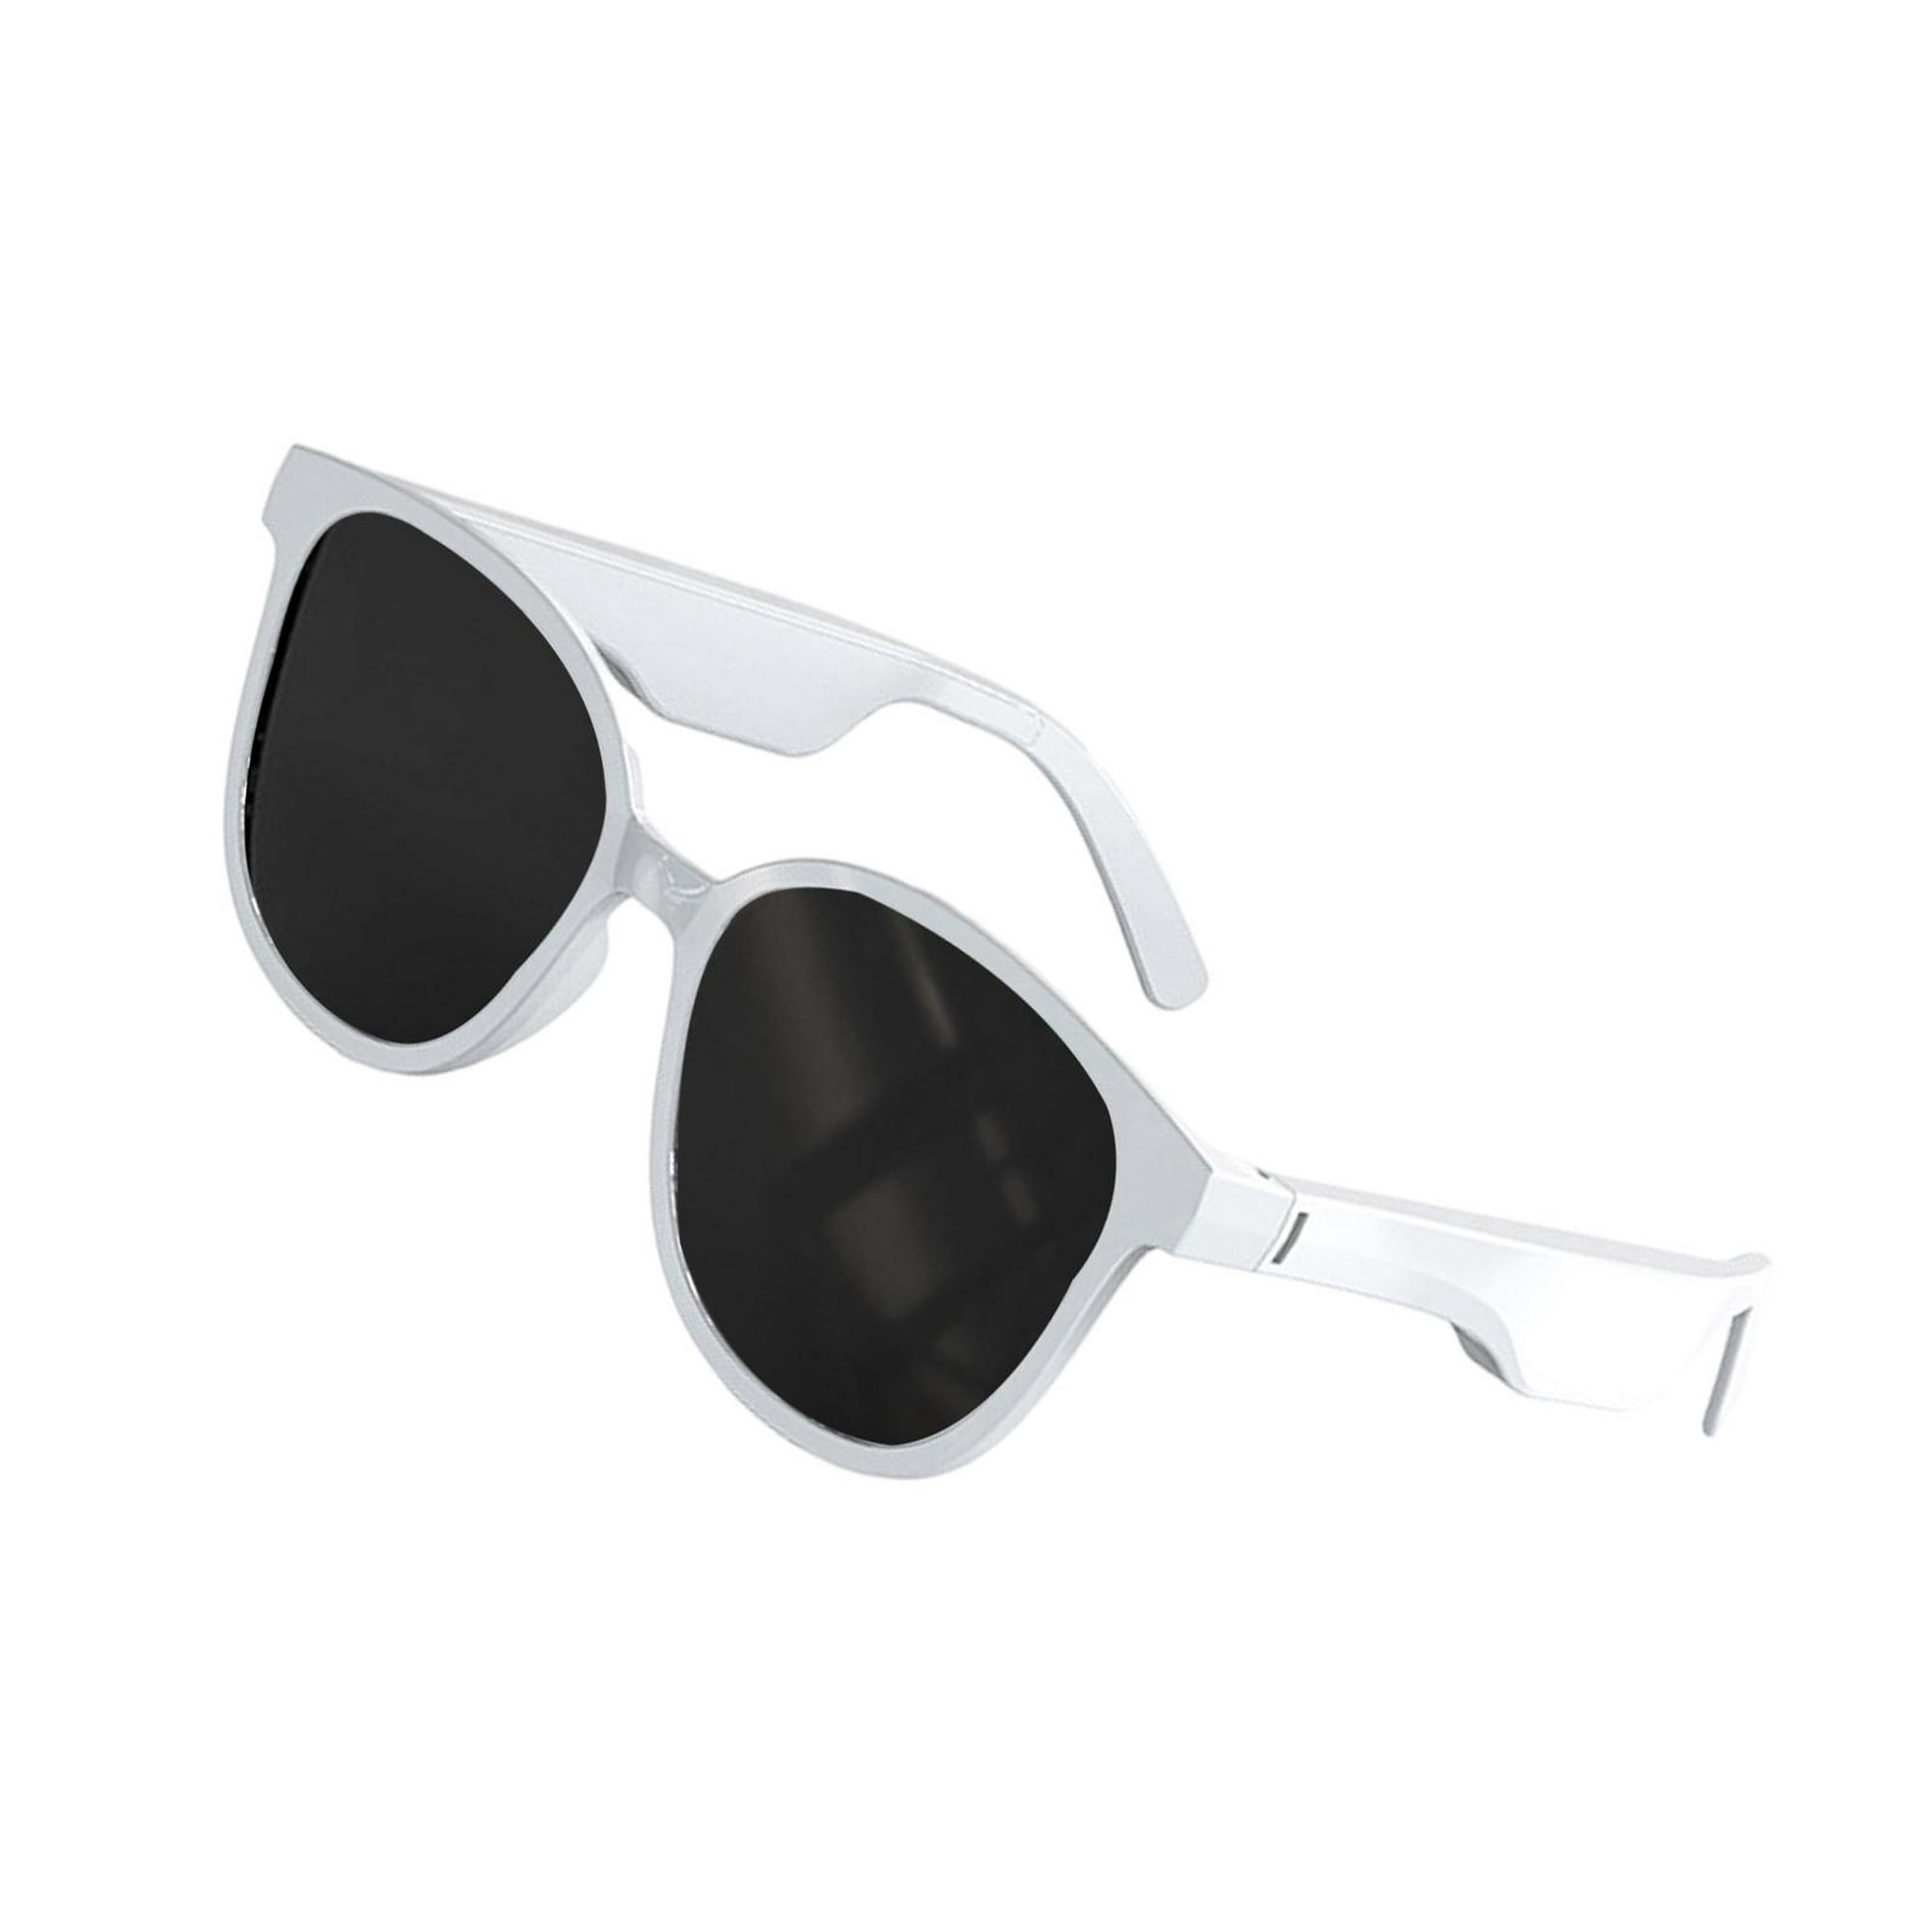 Las cuatro gafas de Louis Vuitton que necesitas para viajar en el tiempo, Moda, S Moda